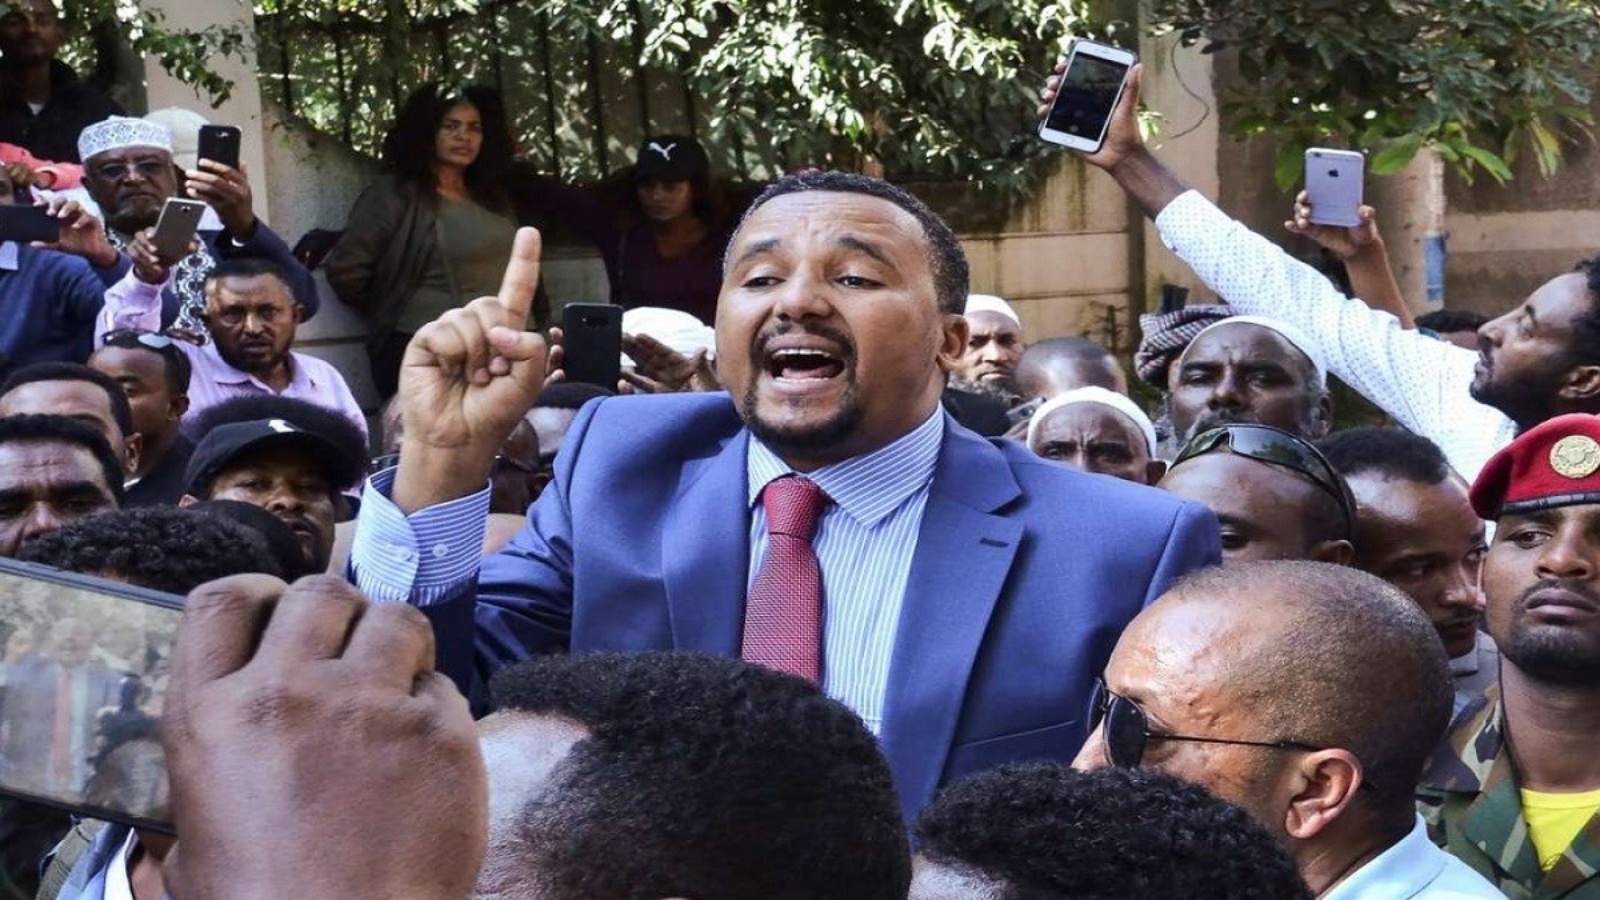 المعارض البارز جوهر محمد الذي قد تؤدي محاكمته الى تأجيج العنف في العاصمة أديس أبابا وأوروميا